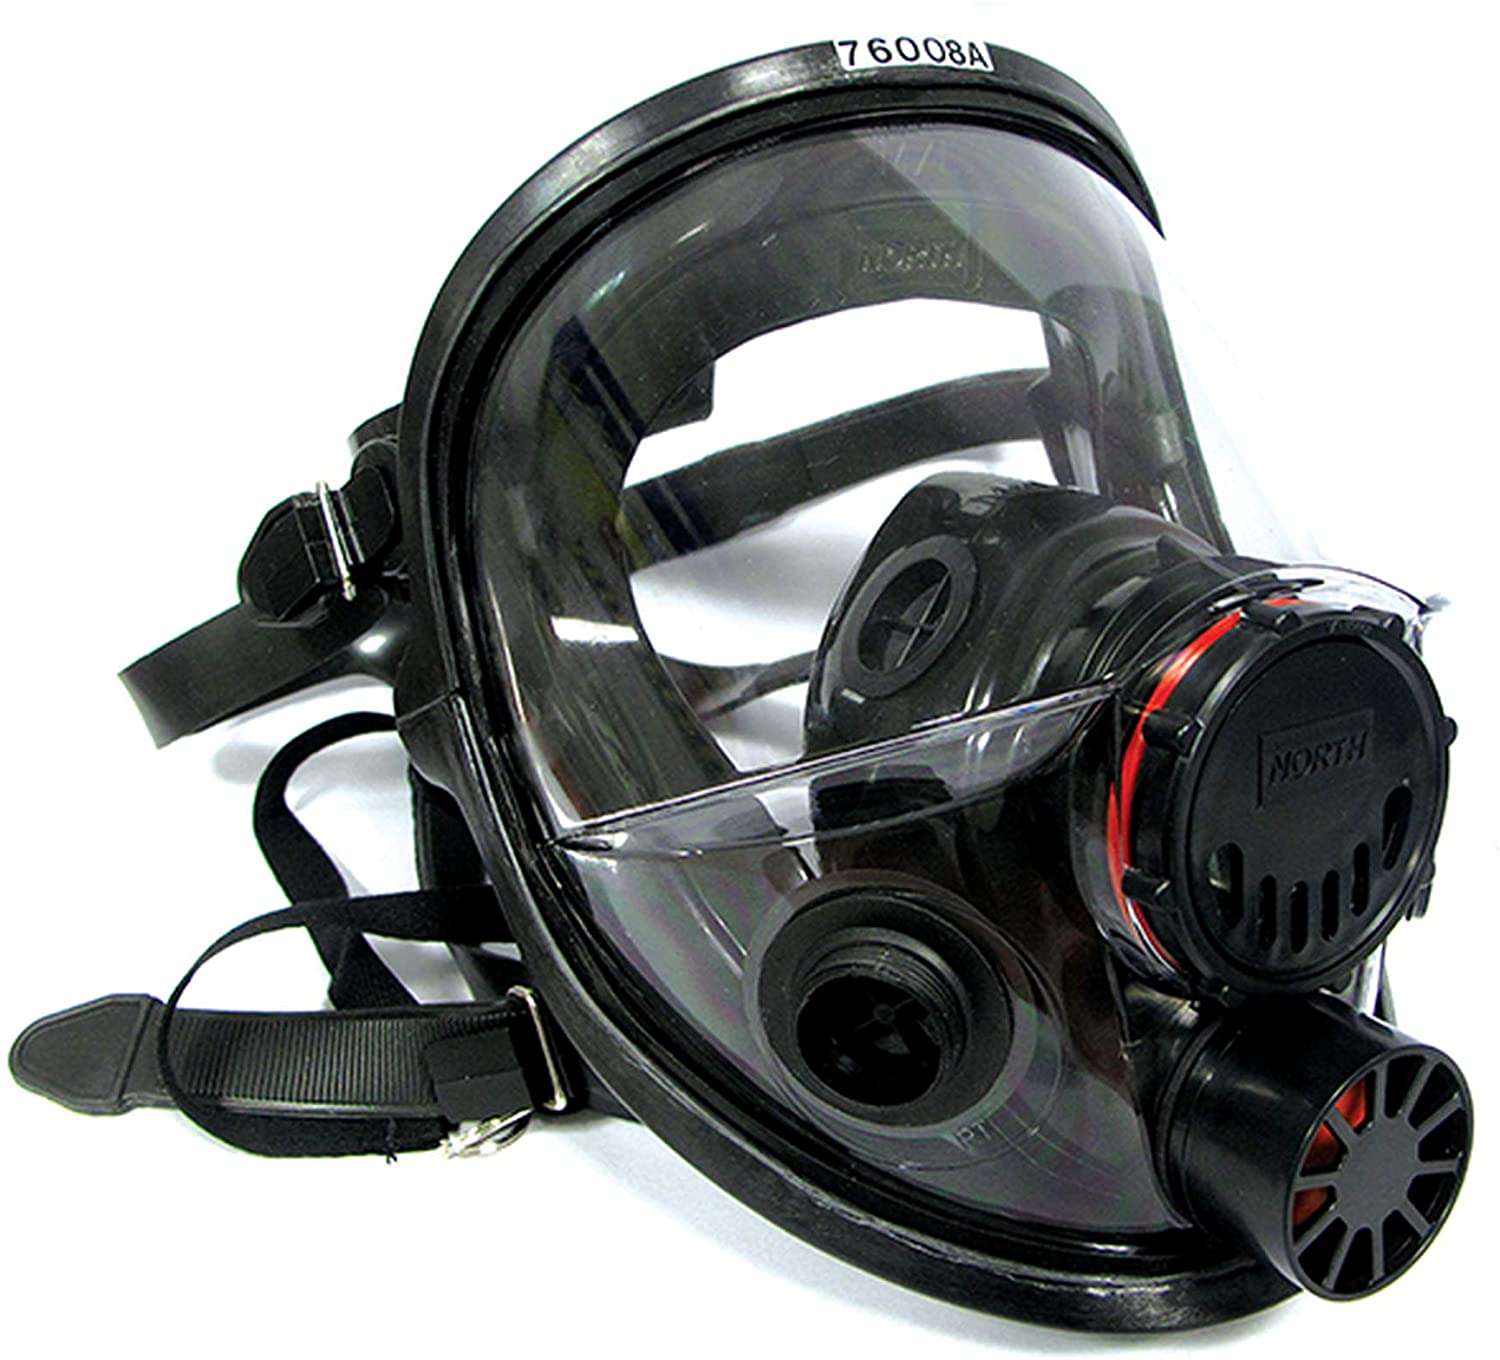 Honeywell North 7600 Series Respirator Mask